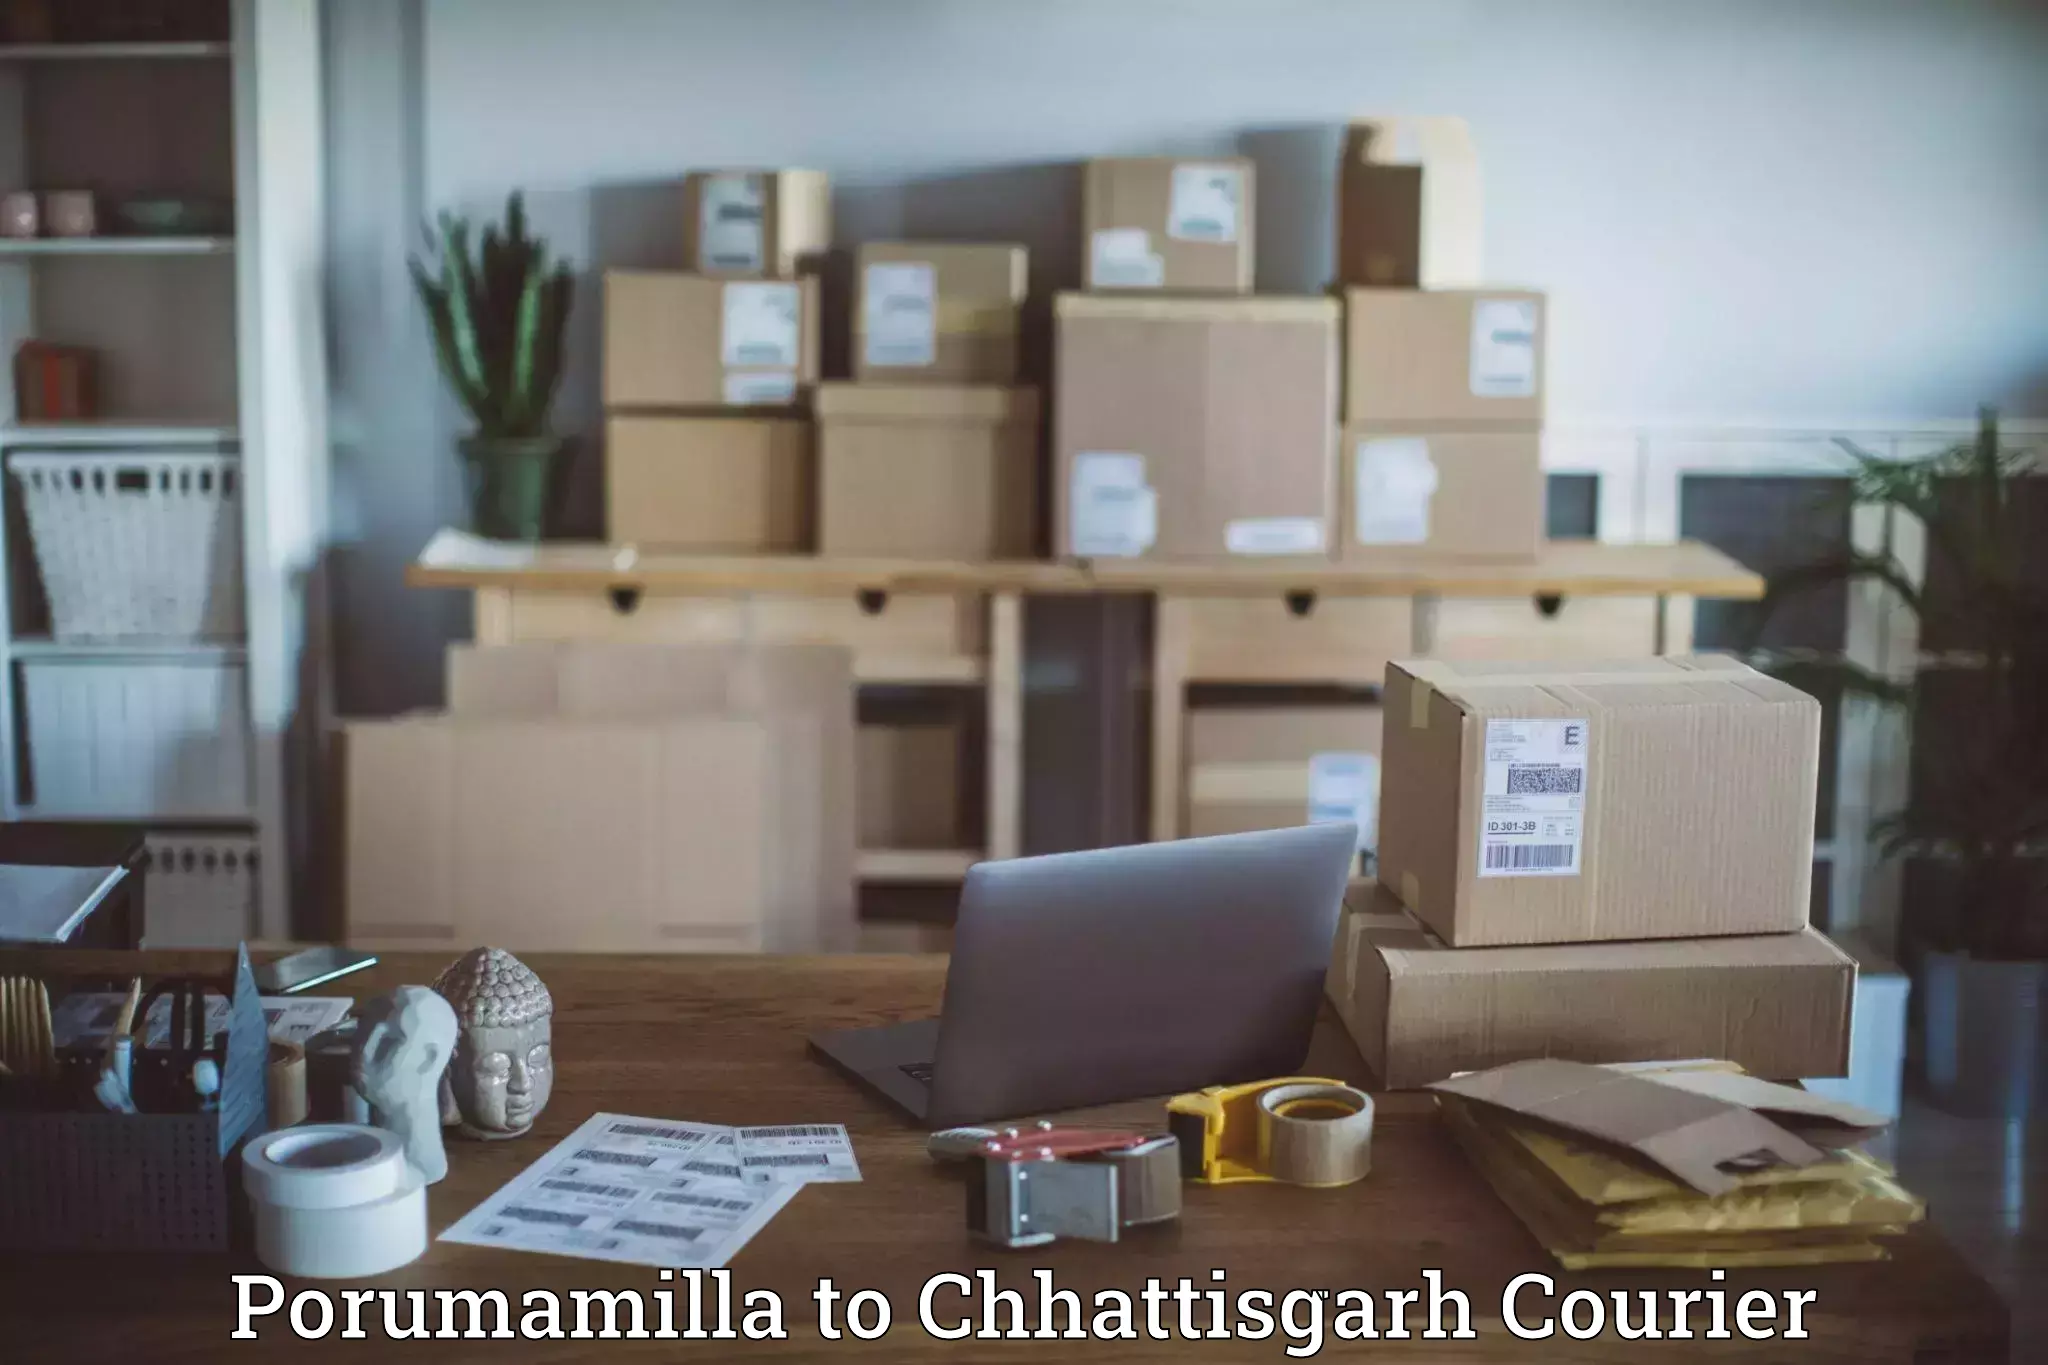 Weekend courier service Porumamilla to Raigarh Chhattisgarh